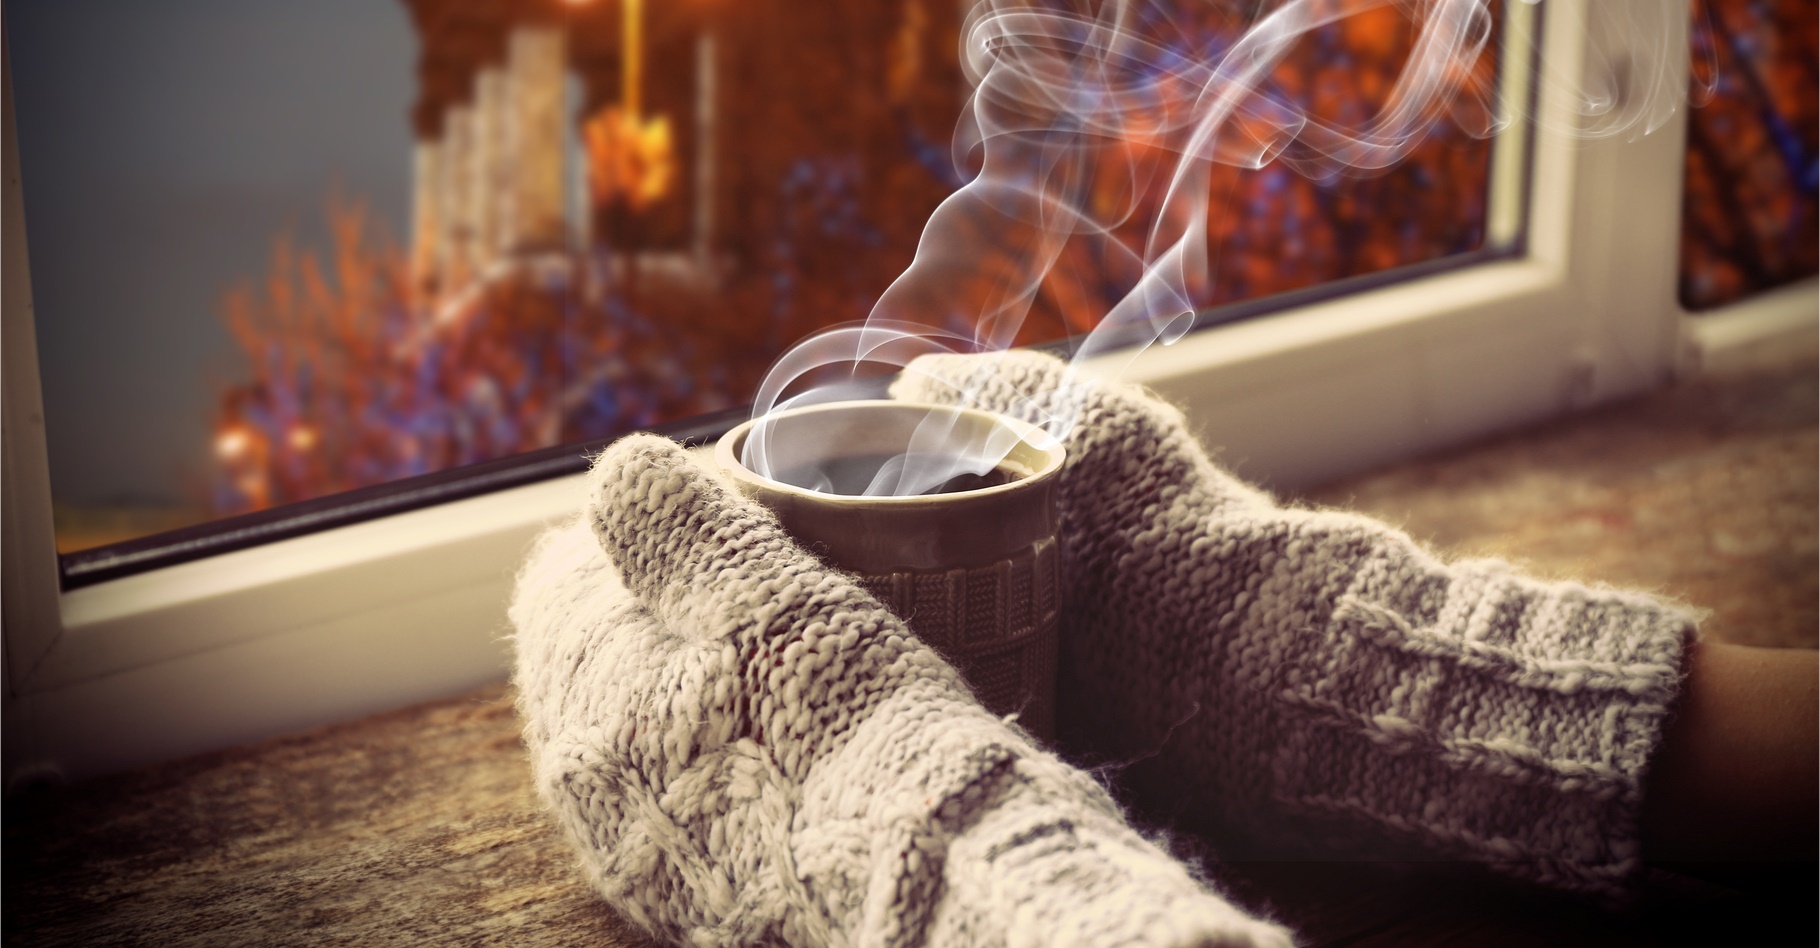 Le froid peut provoquer une crise de la maladie de&nbsp;Raynaud. La solution : se réchauffer et bouger les doigts. © Africa Studio, Shutterstock